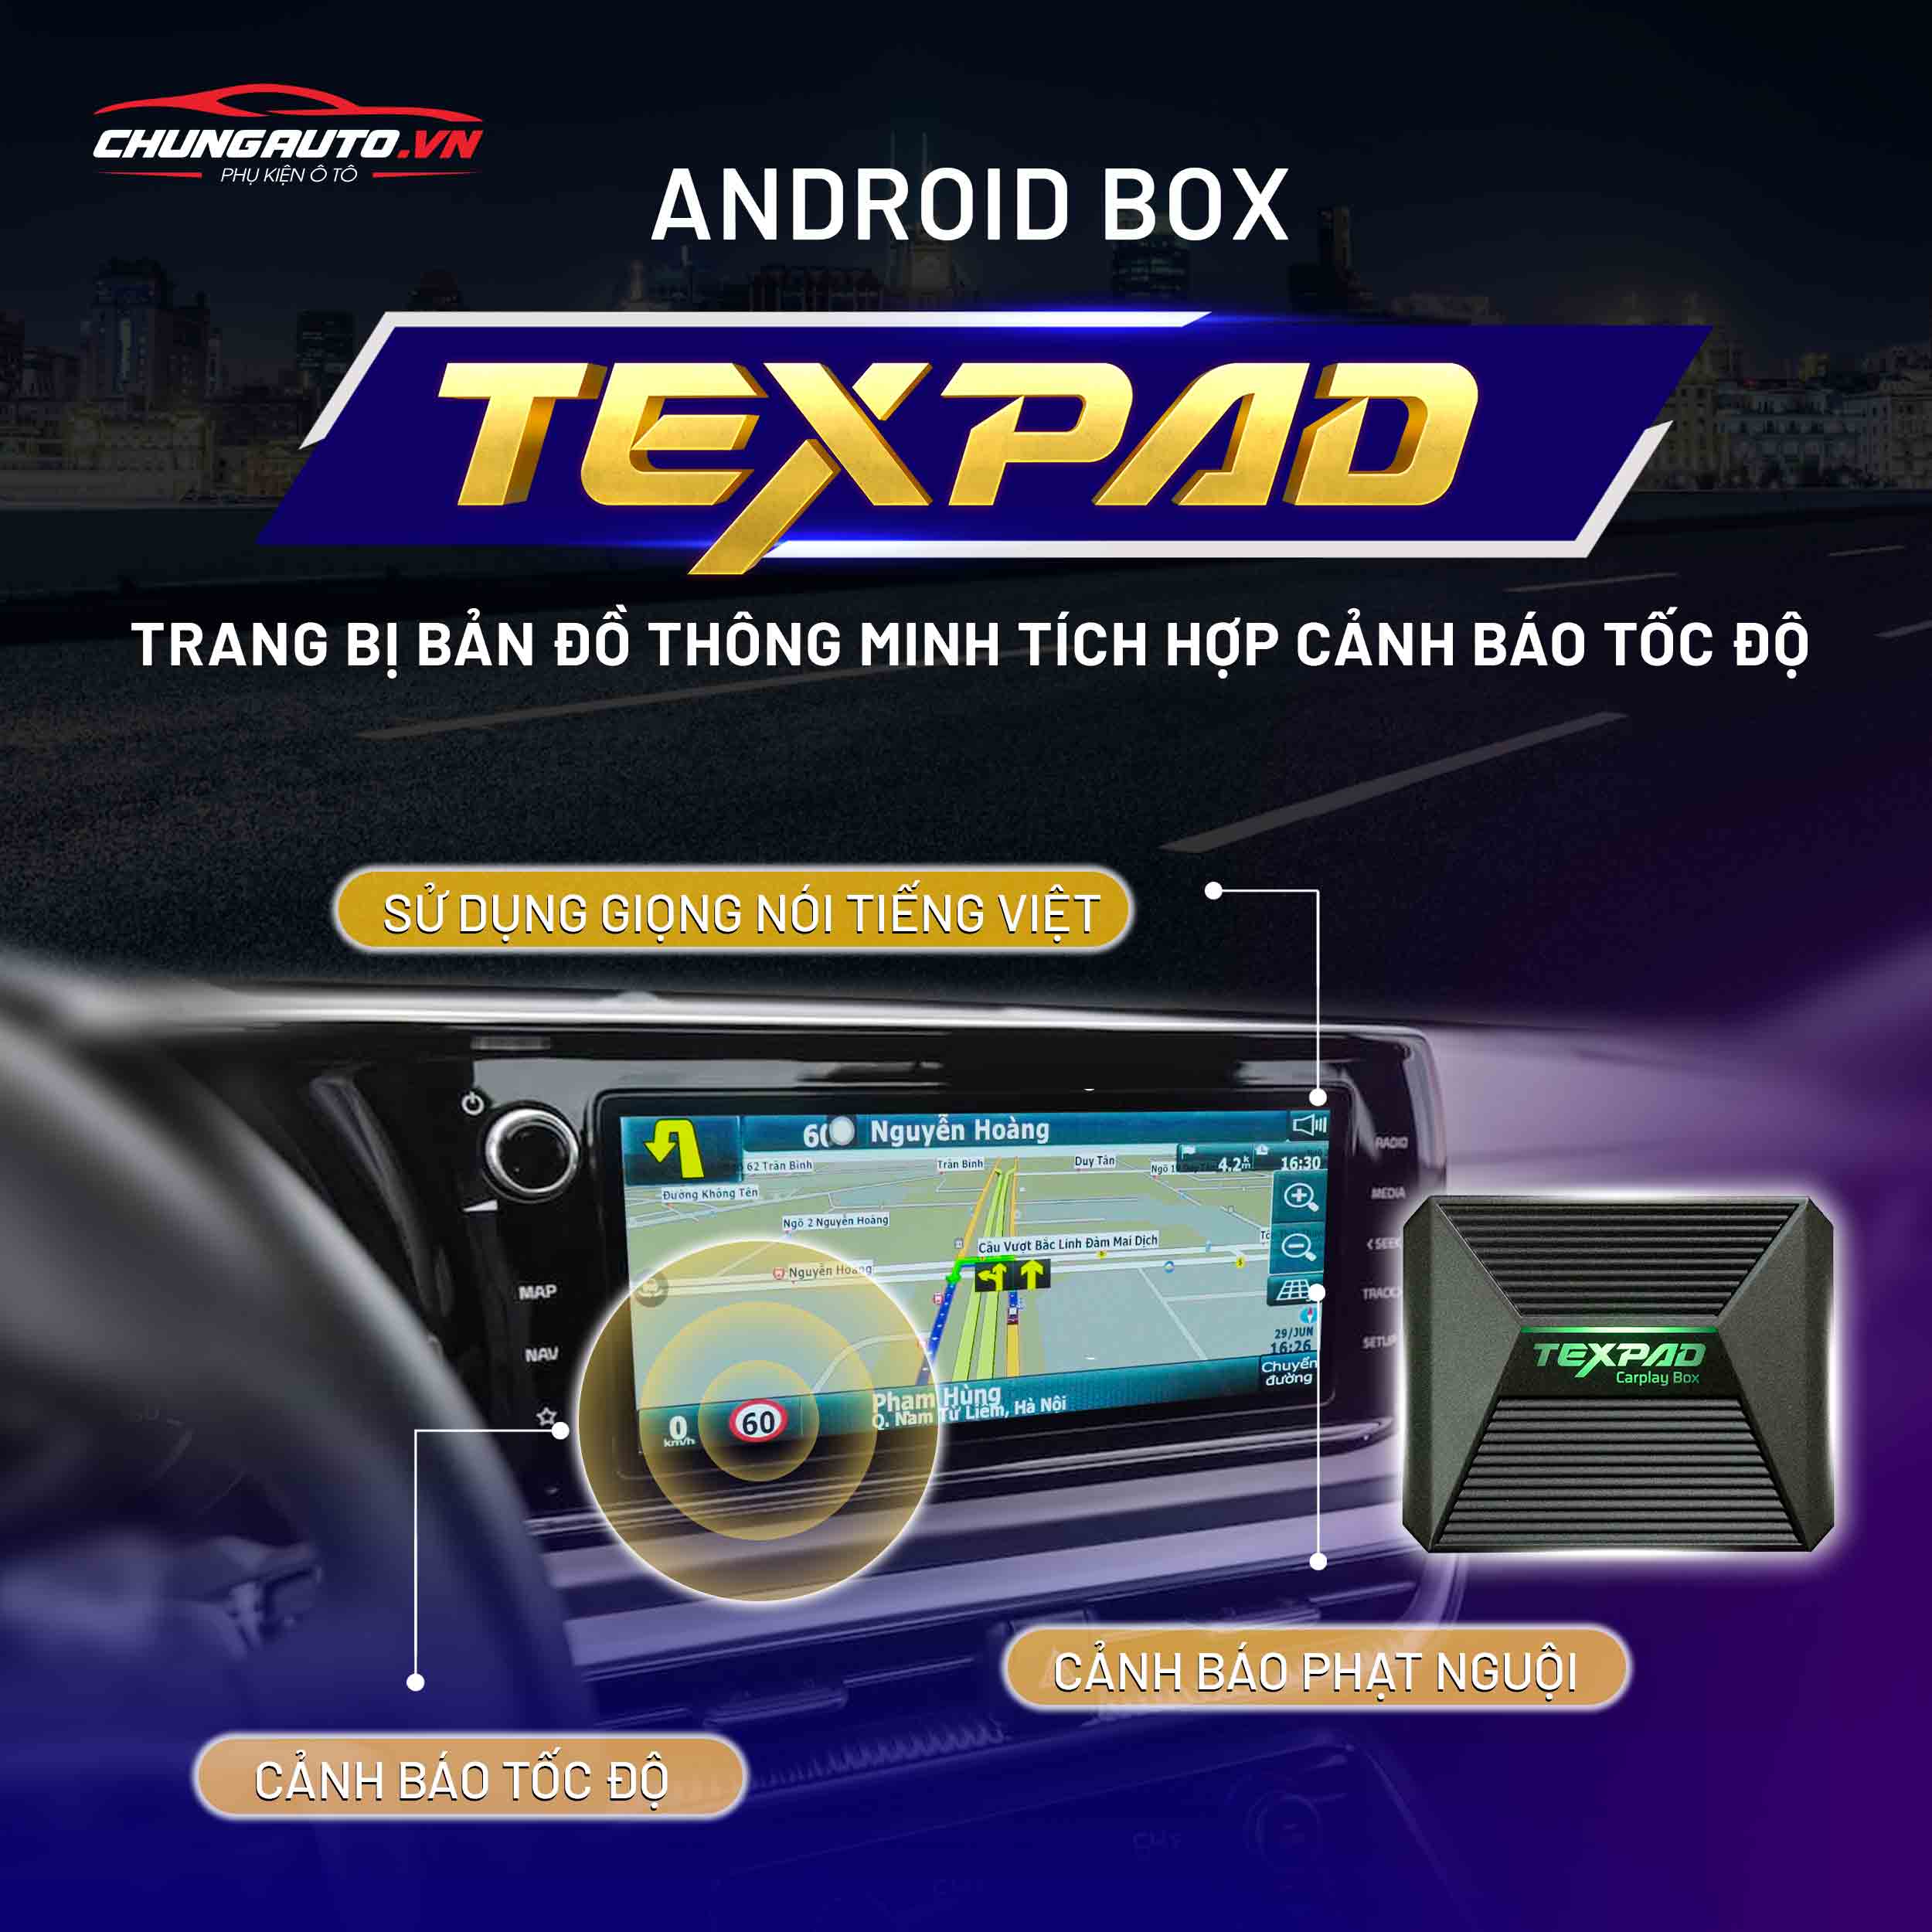 Android Box xe hơi chuẩn bị bạn dạng đồ gia dụng thông minh